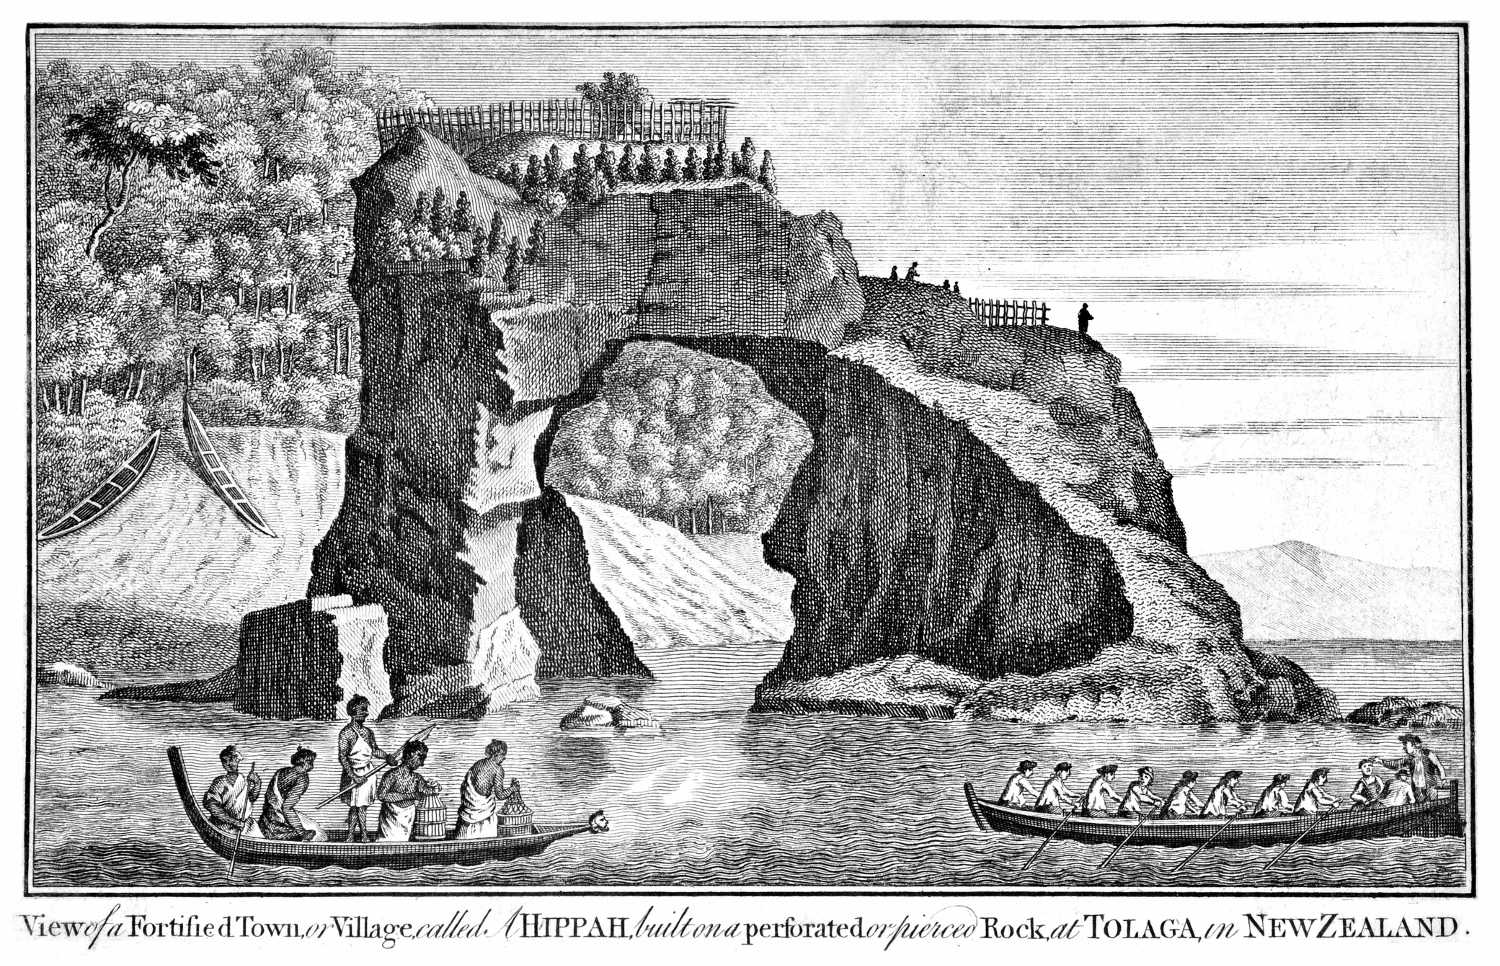 Captain James Cook FRS 1728 1779 British explorer, navigator, cartographer, Captain Royal Navy. Fortified town Tolaga New Zealand Hippaii coast